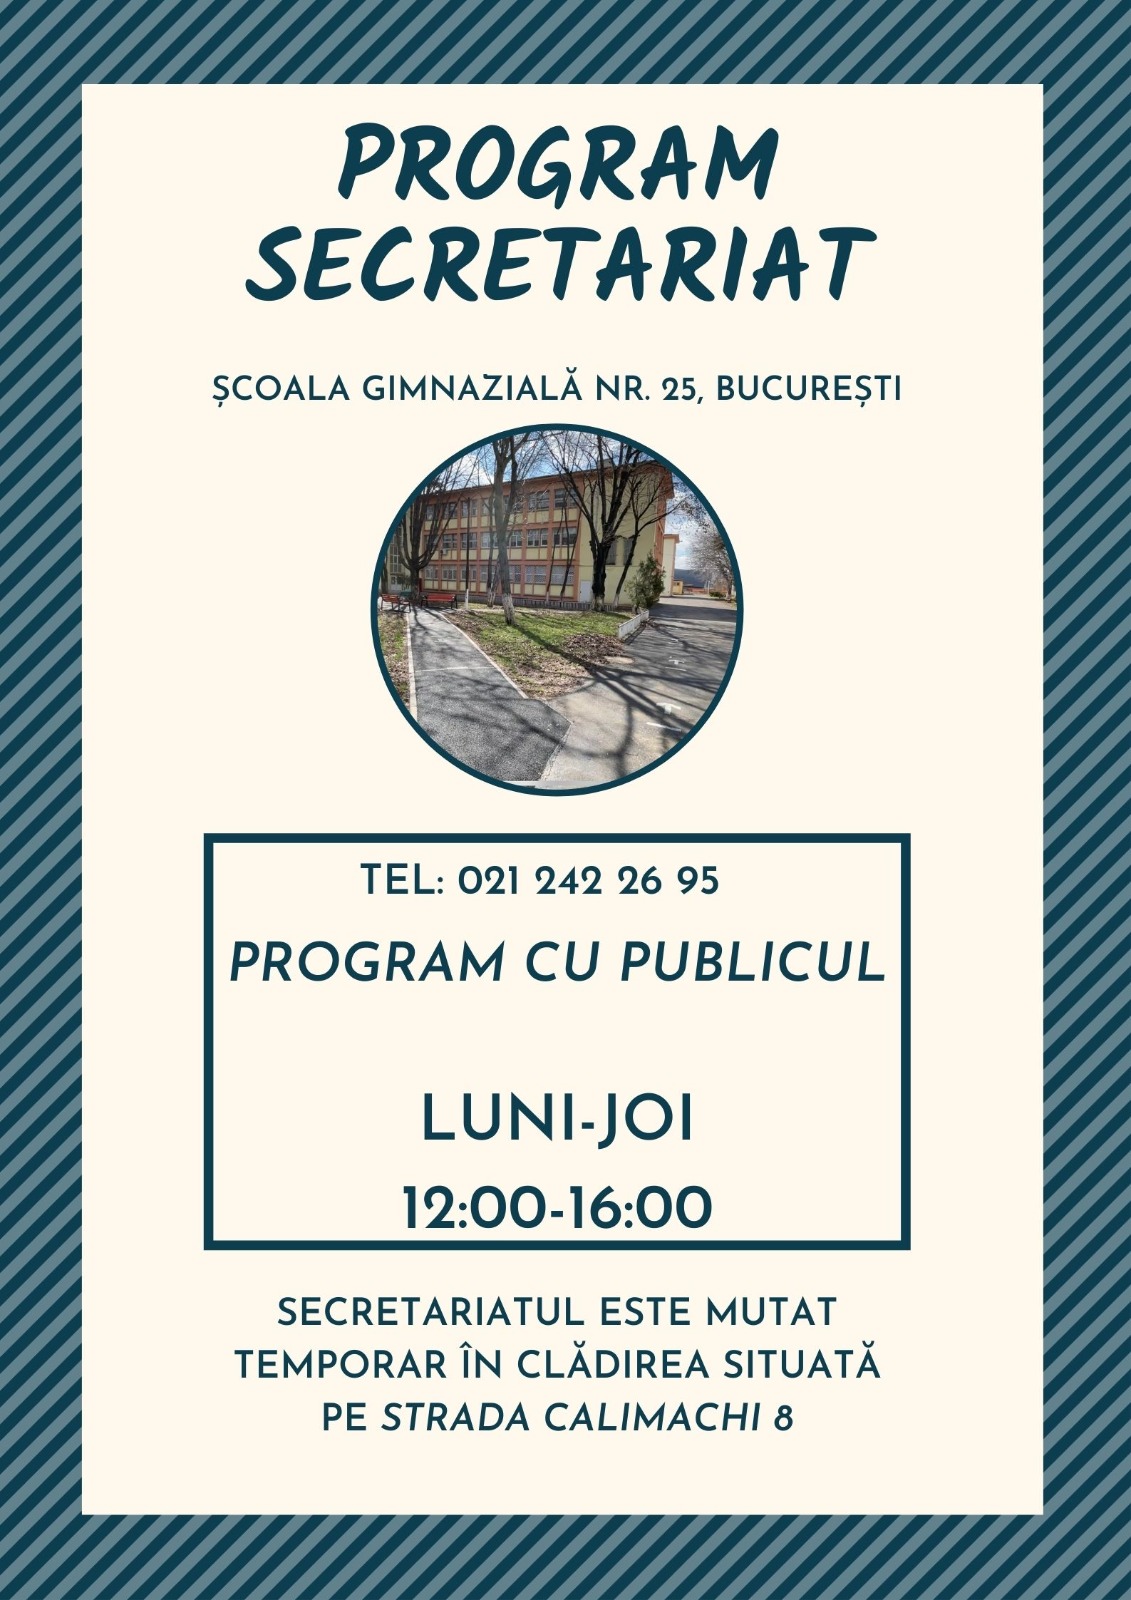 Program Secretariat - Calimachii 8